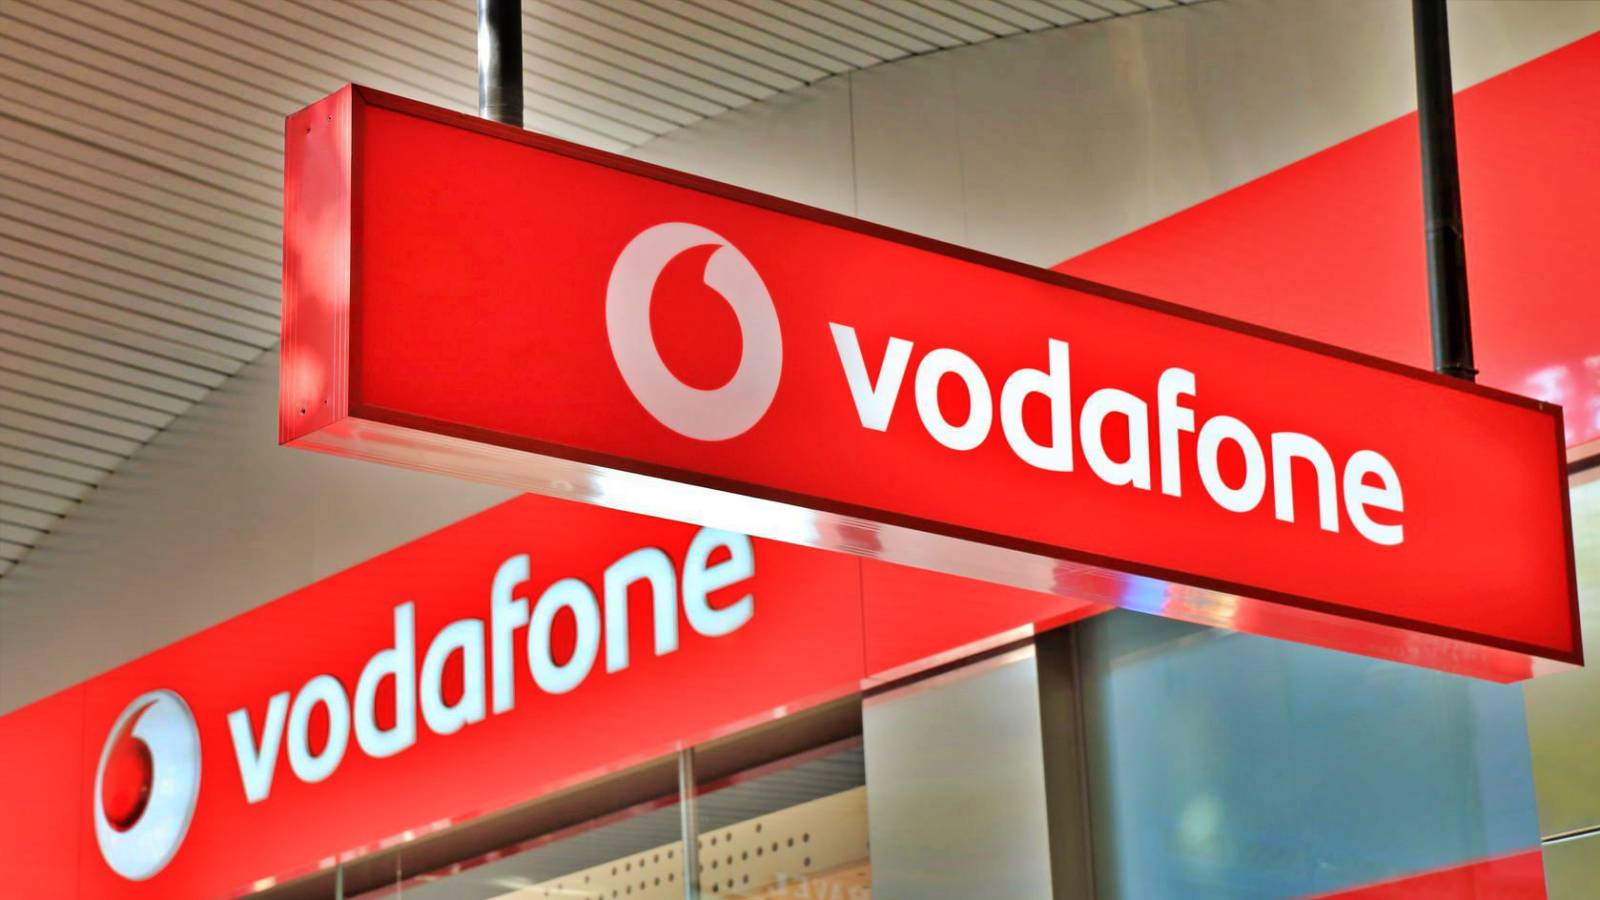 Los clientes de Vodafone reciben avisos GRATUITOS por parte del operador durante 3 meses